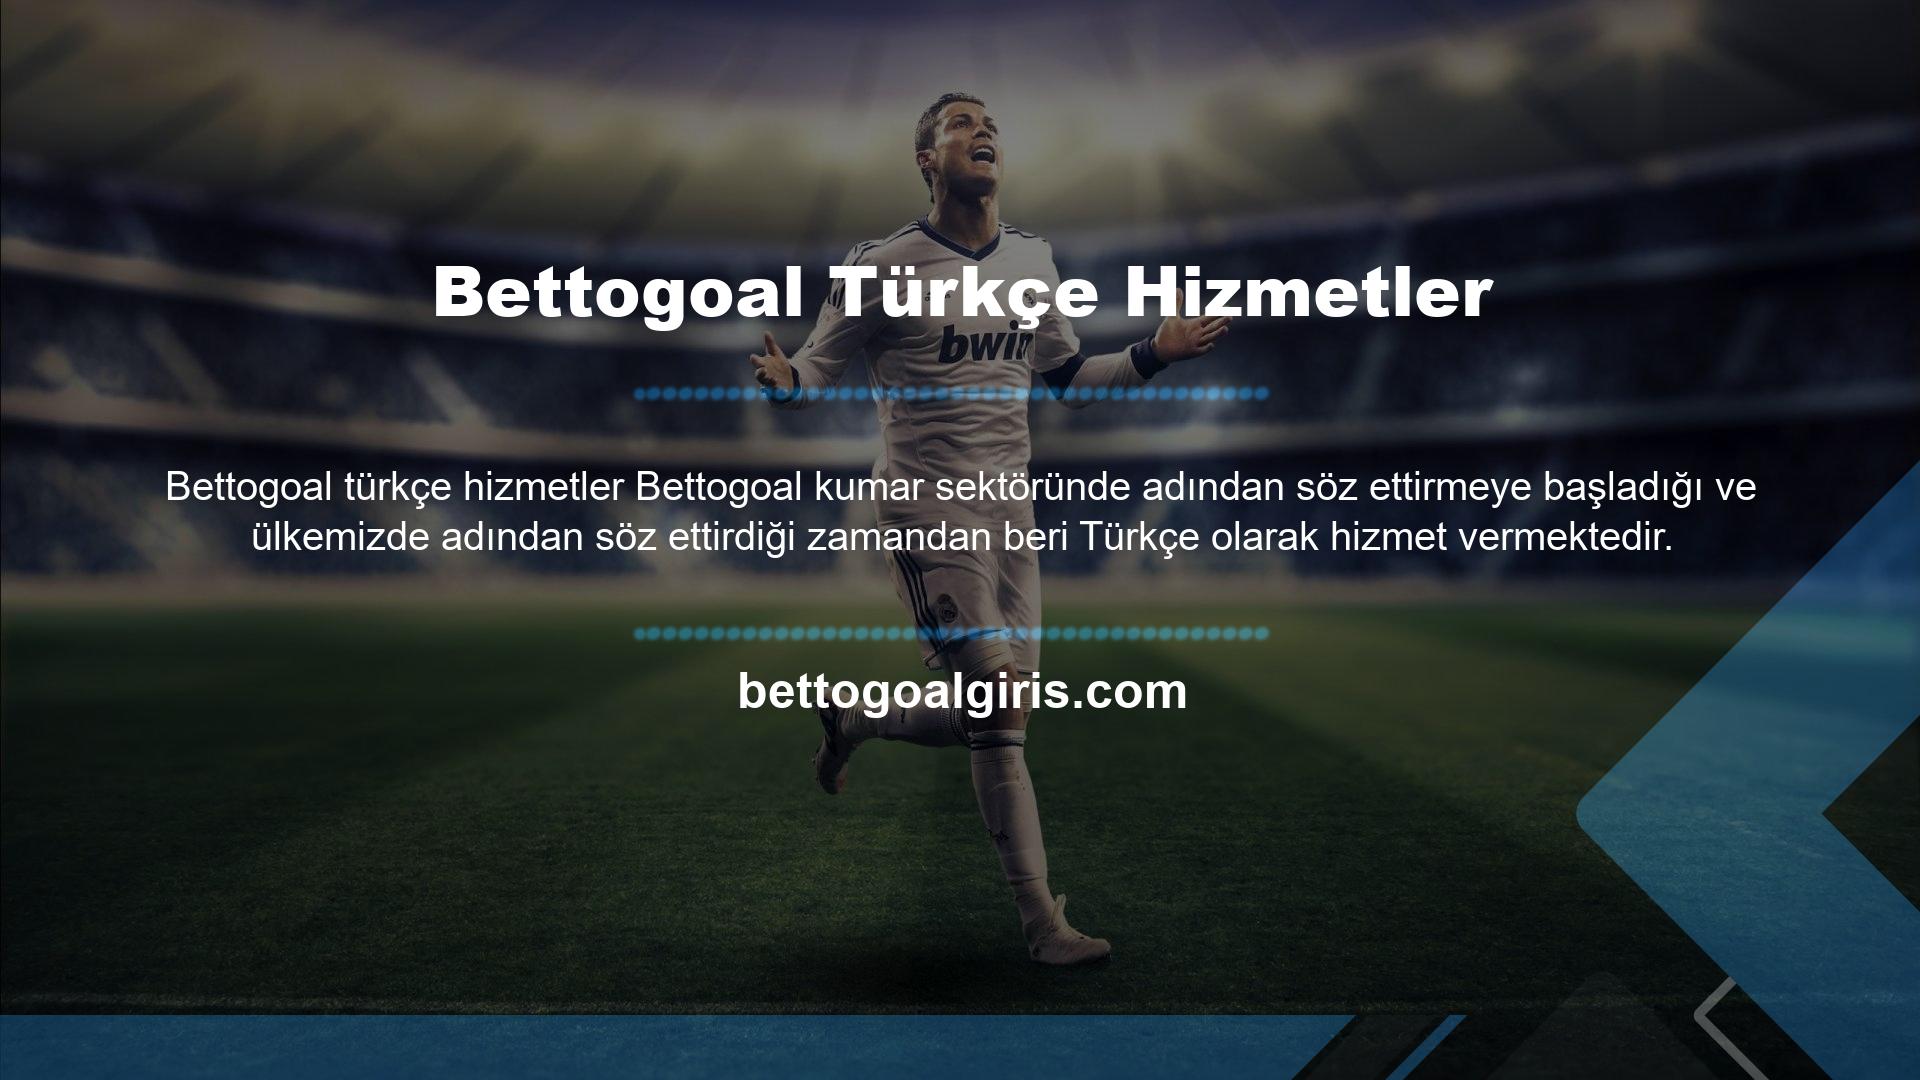 Bir Türk iddia sitesi olarak Bettogoal, rakiplerinden daha fazla üye kazanmıştır